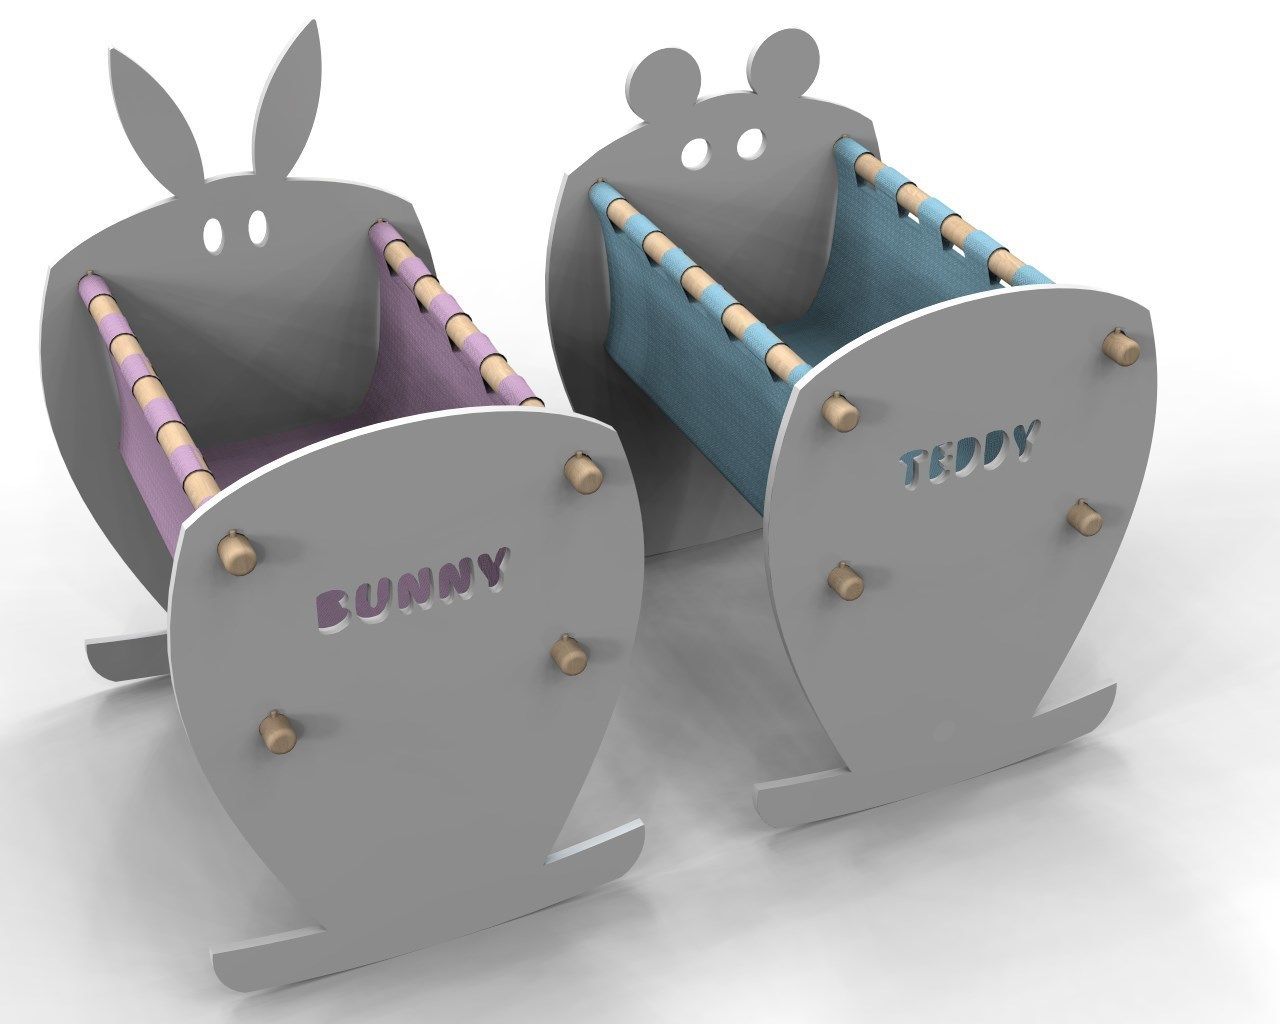 Teddy&Bunny, Nyda Design - Nicola D'Alessandro architetto Nyda Design - Nicola D'Alessandro architetto Nursery/kid’s room Beds & cribs